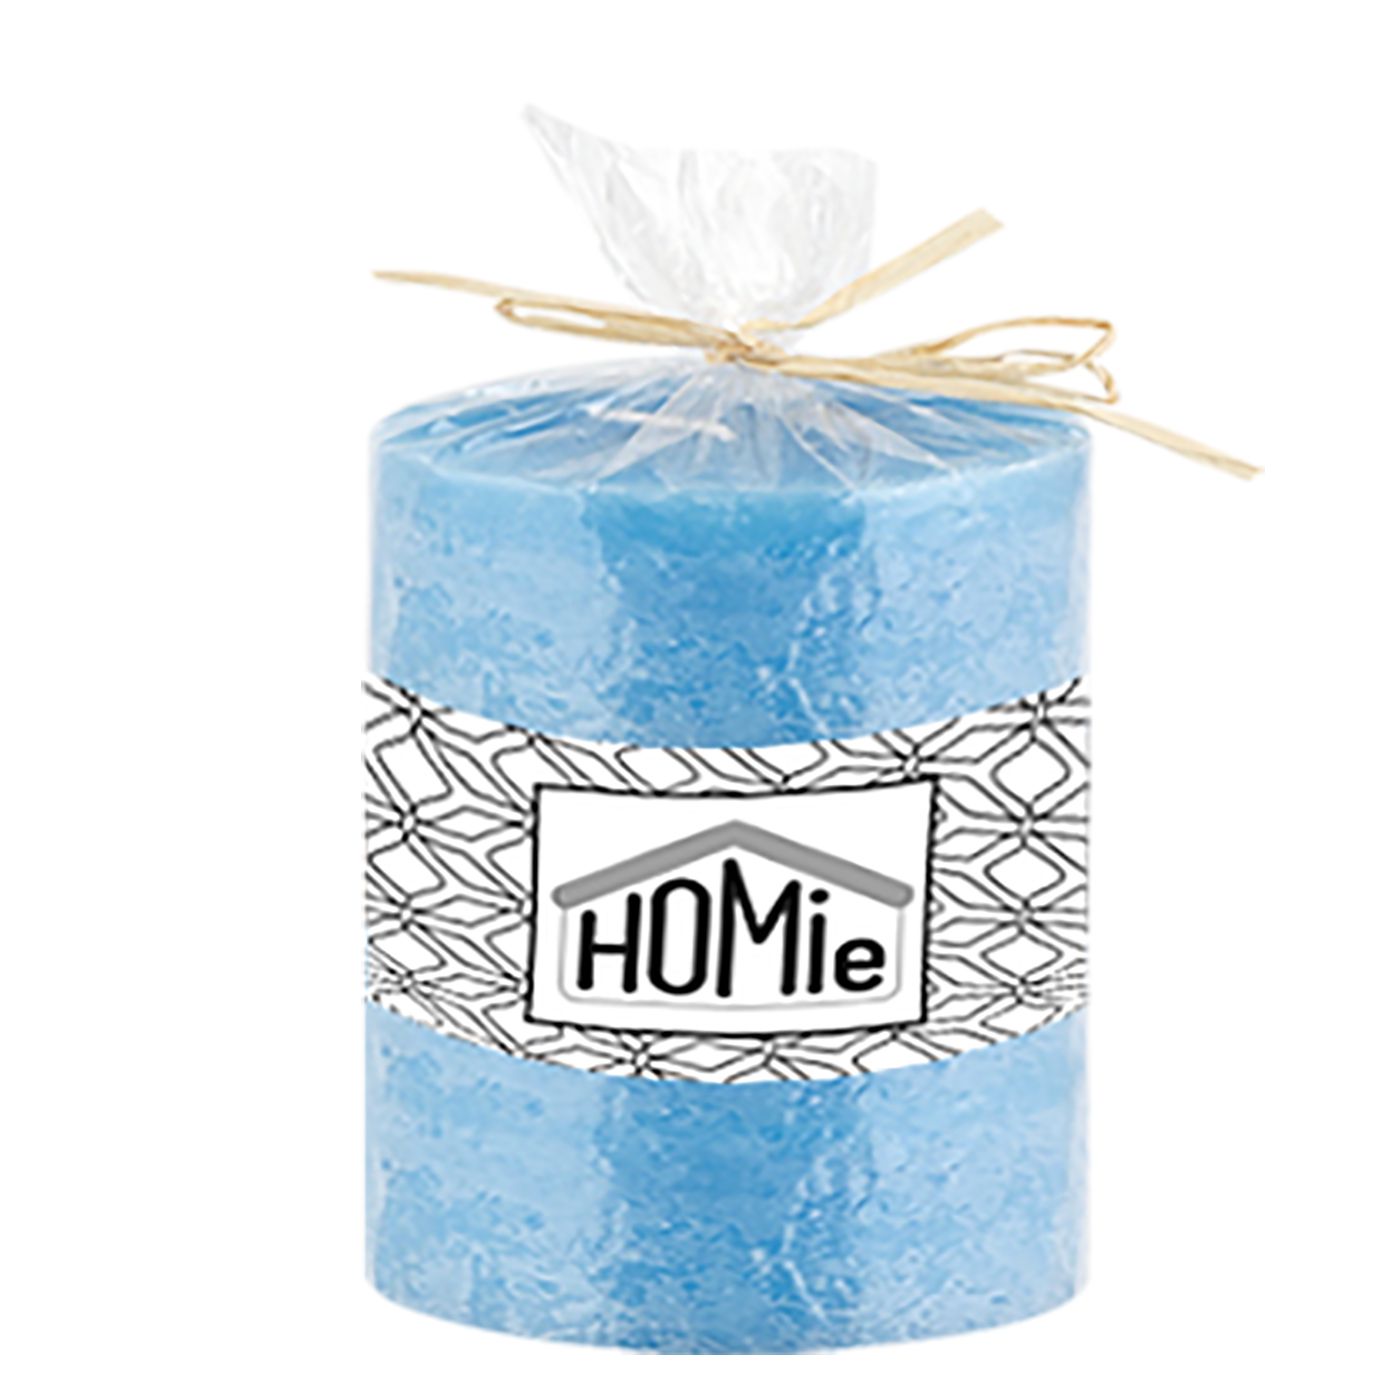 Homie Κερί Αρωματικό Κορμός 9,5x10εκ. Homie 37-71-blue - Homie - 37-71-blue